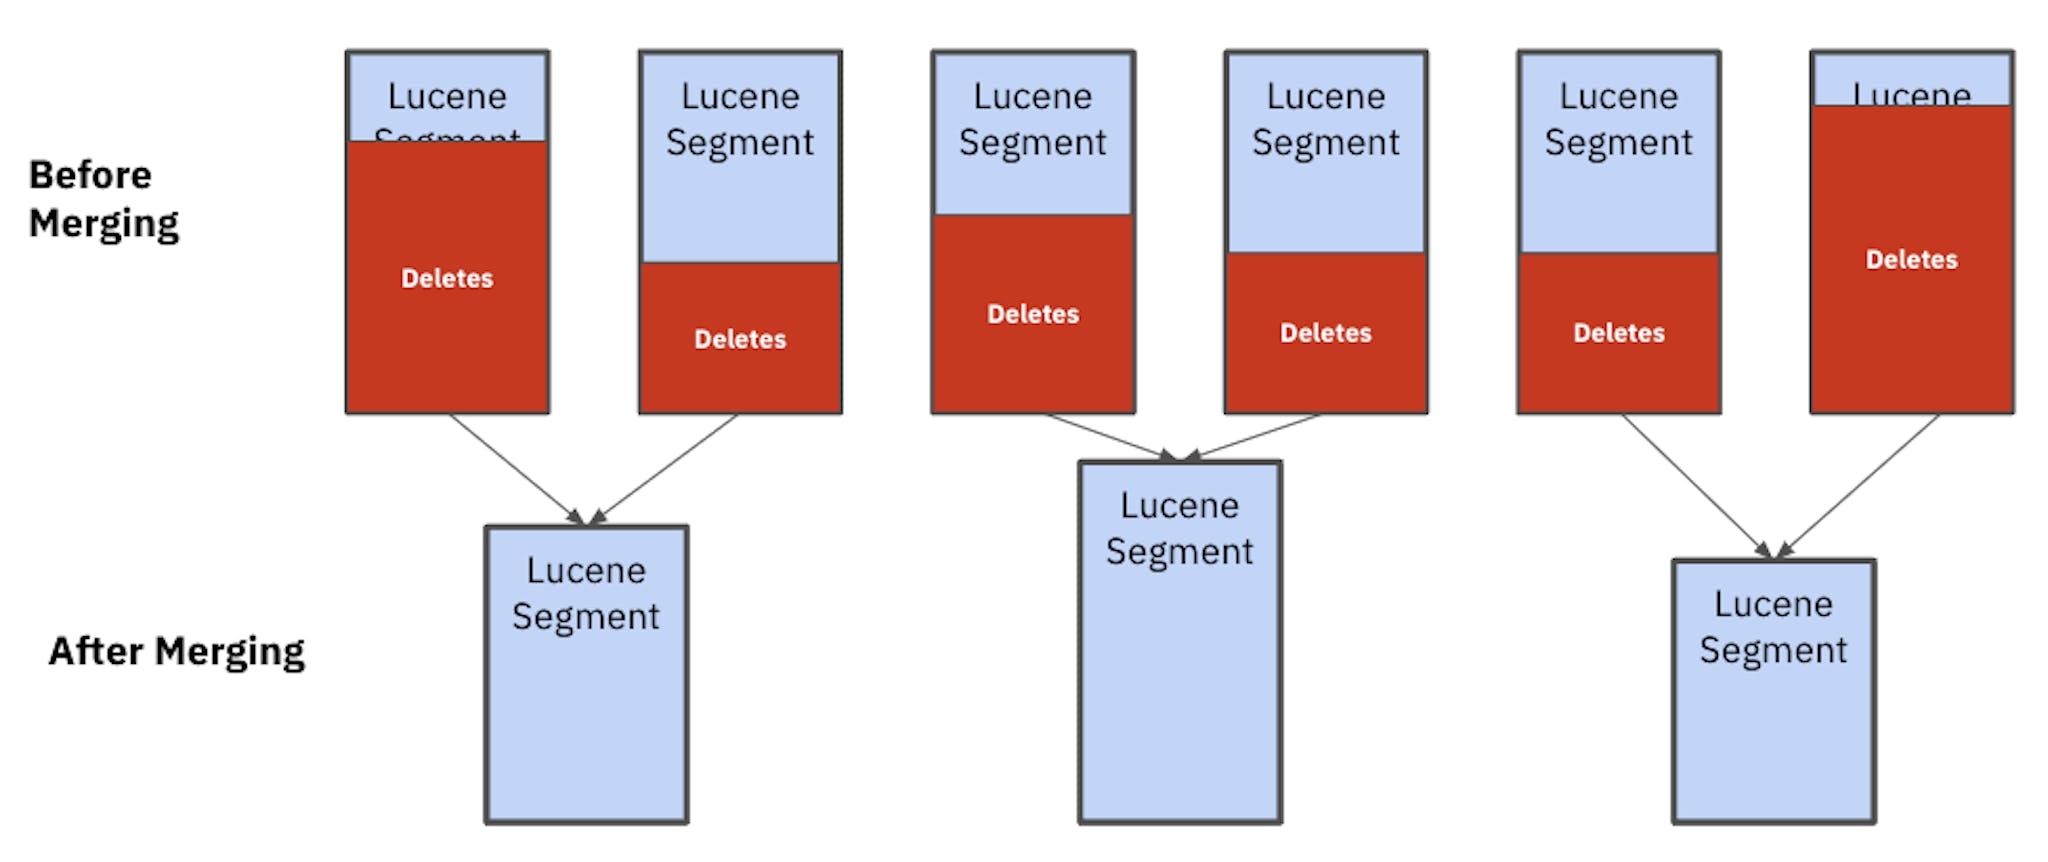 Após a mesclagem, você pode ver que os segmentos Lucene têm tamanhos diferentes. Esses segmentos desiguais afetam o desempenho e a estabilidade